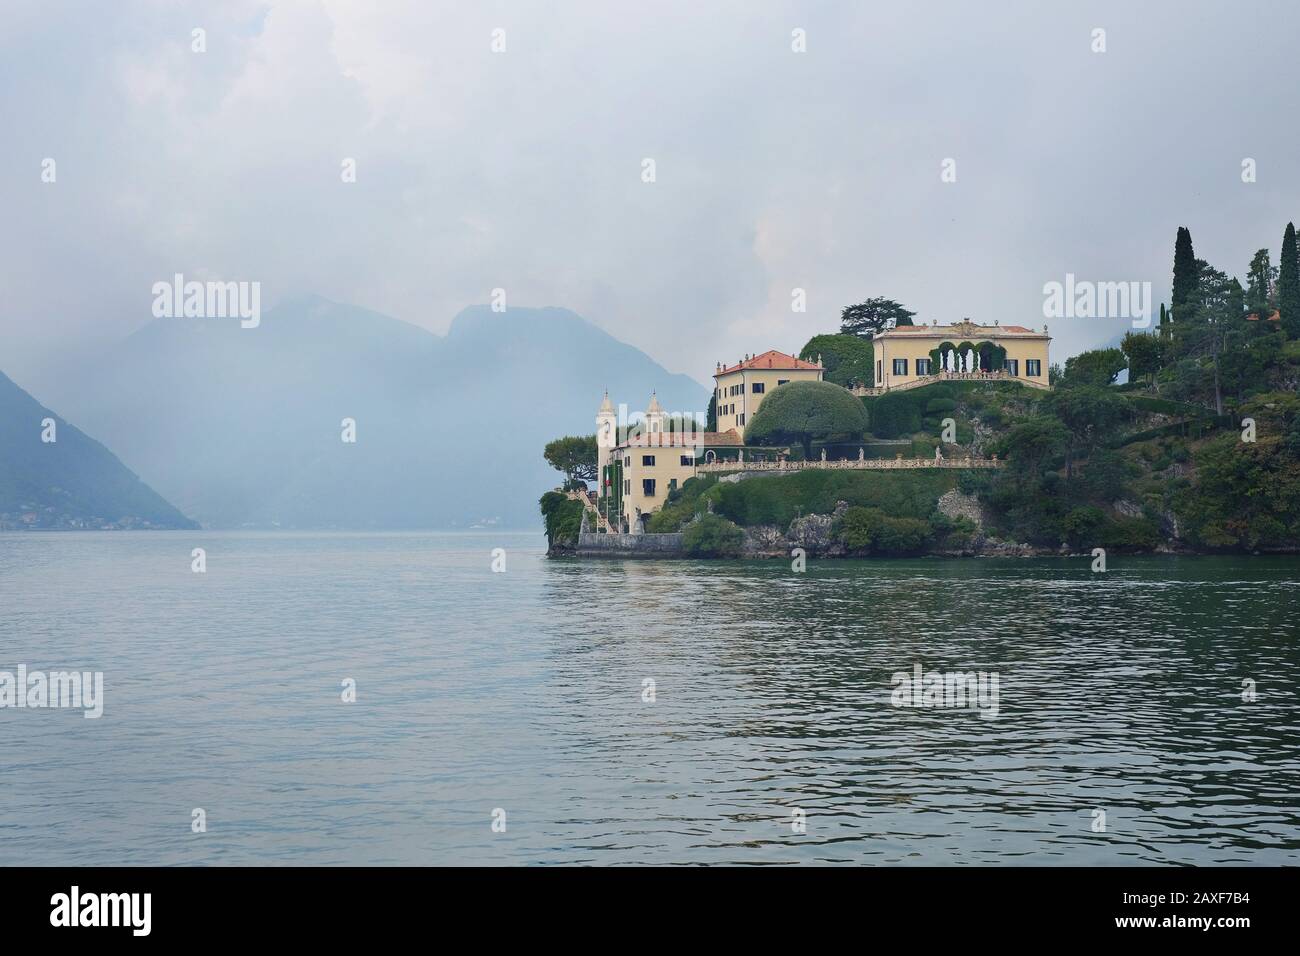 Comer See, Lombardei Italien, ein wunderschöner alpiner See malerischer Dörfer, luxuriöse Villen, Palazzo, Urlaubsorte dramatische Landschaft Stockfoto